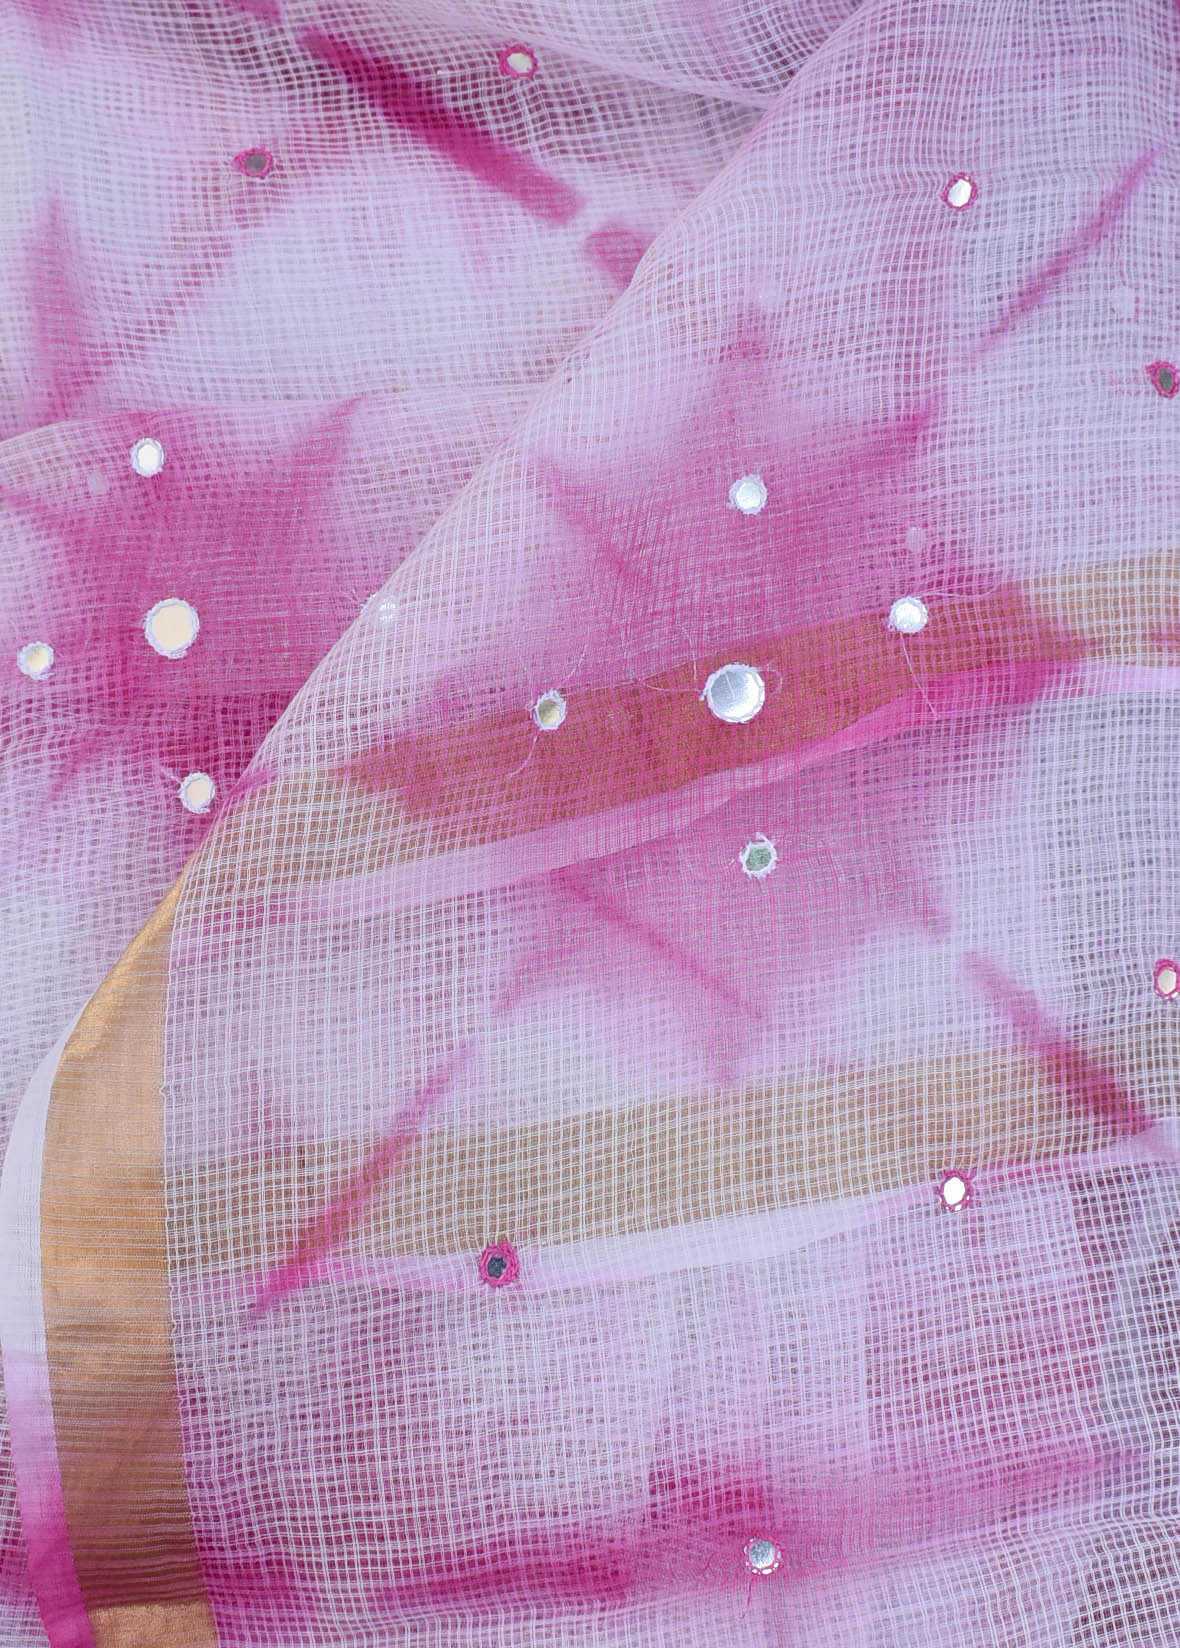 Shibori Dyed Kota Cotton Saree with  Hand embroidery & foil Mirror work